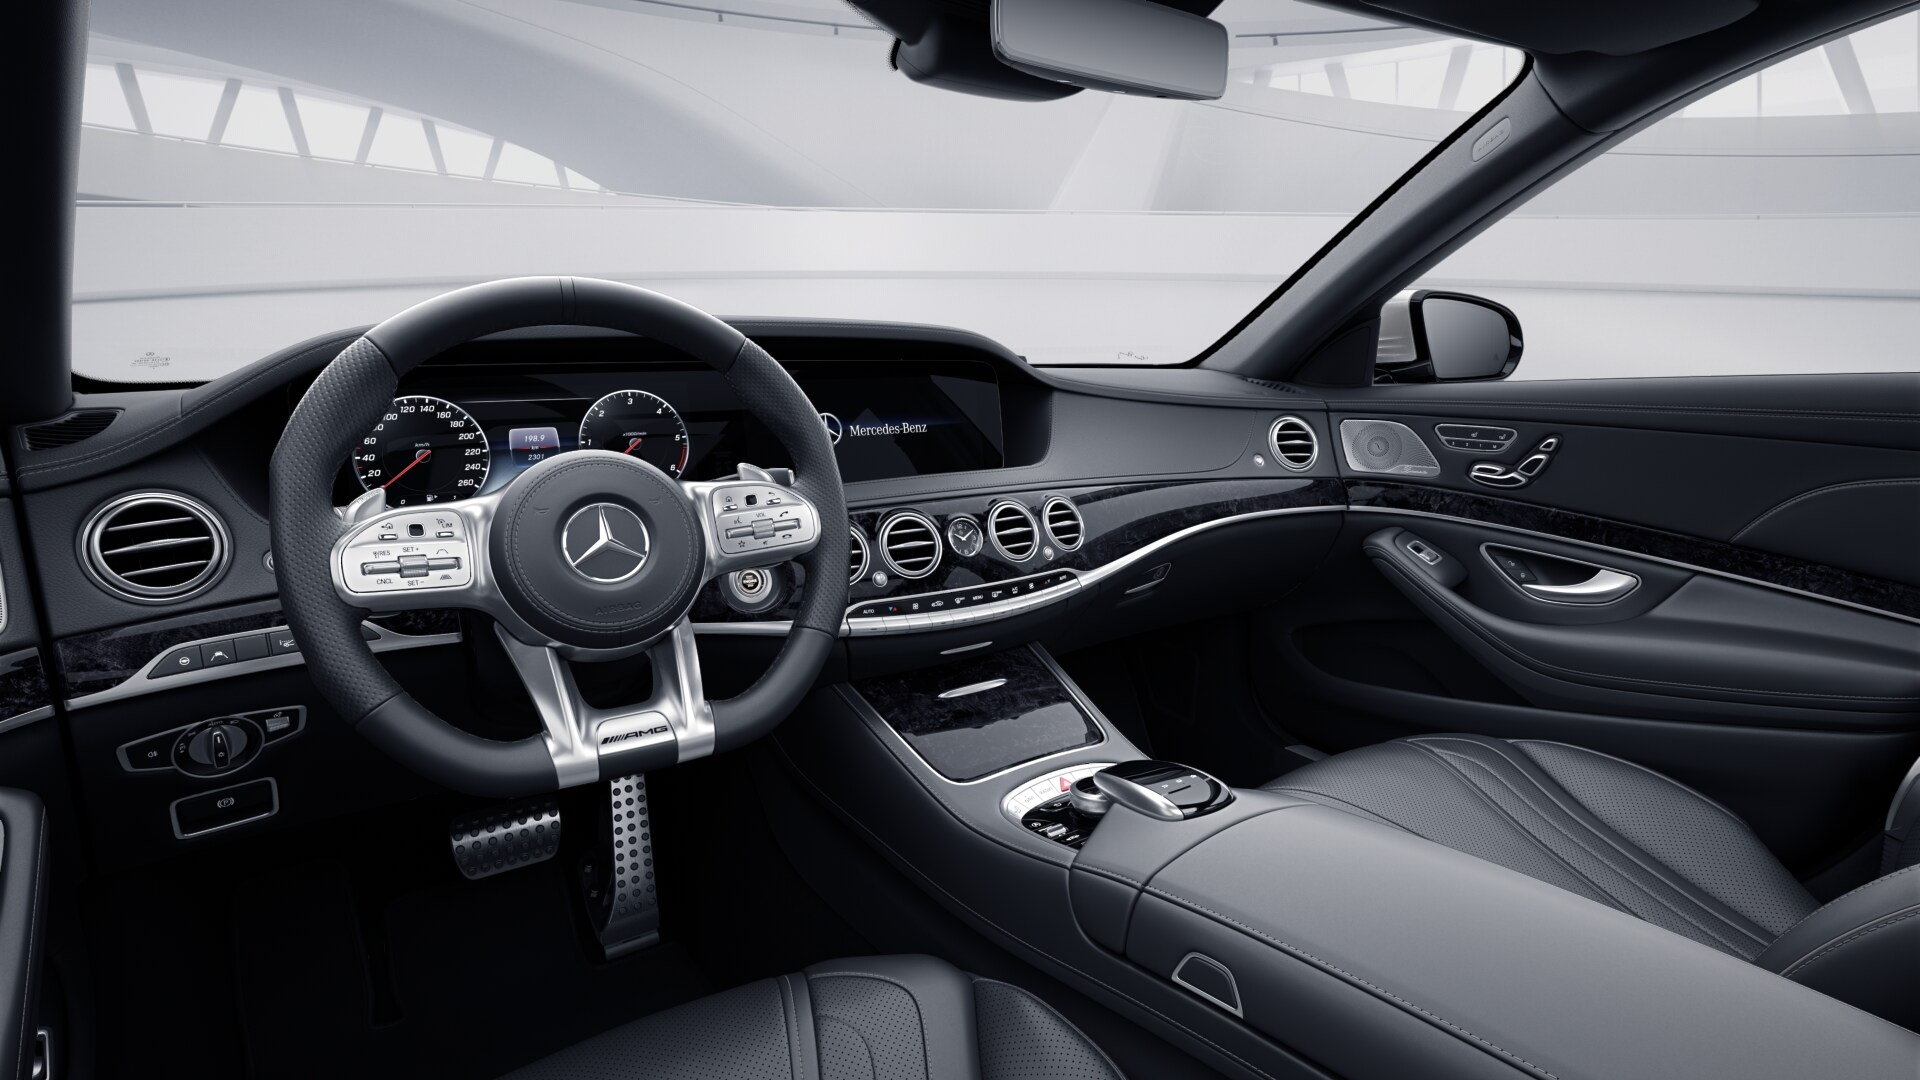 Mercedes S 400d 4matic 9G-tronic AMG LONG | luxusní naftová limuzína | nové auto | maximální výbava | super cena 2.519.000,- Kč bez DPH